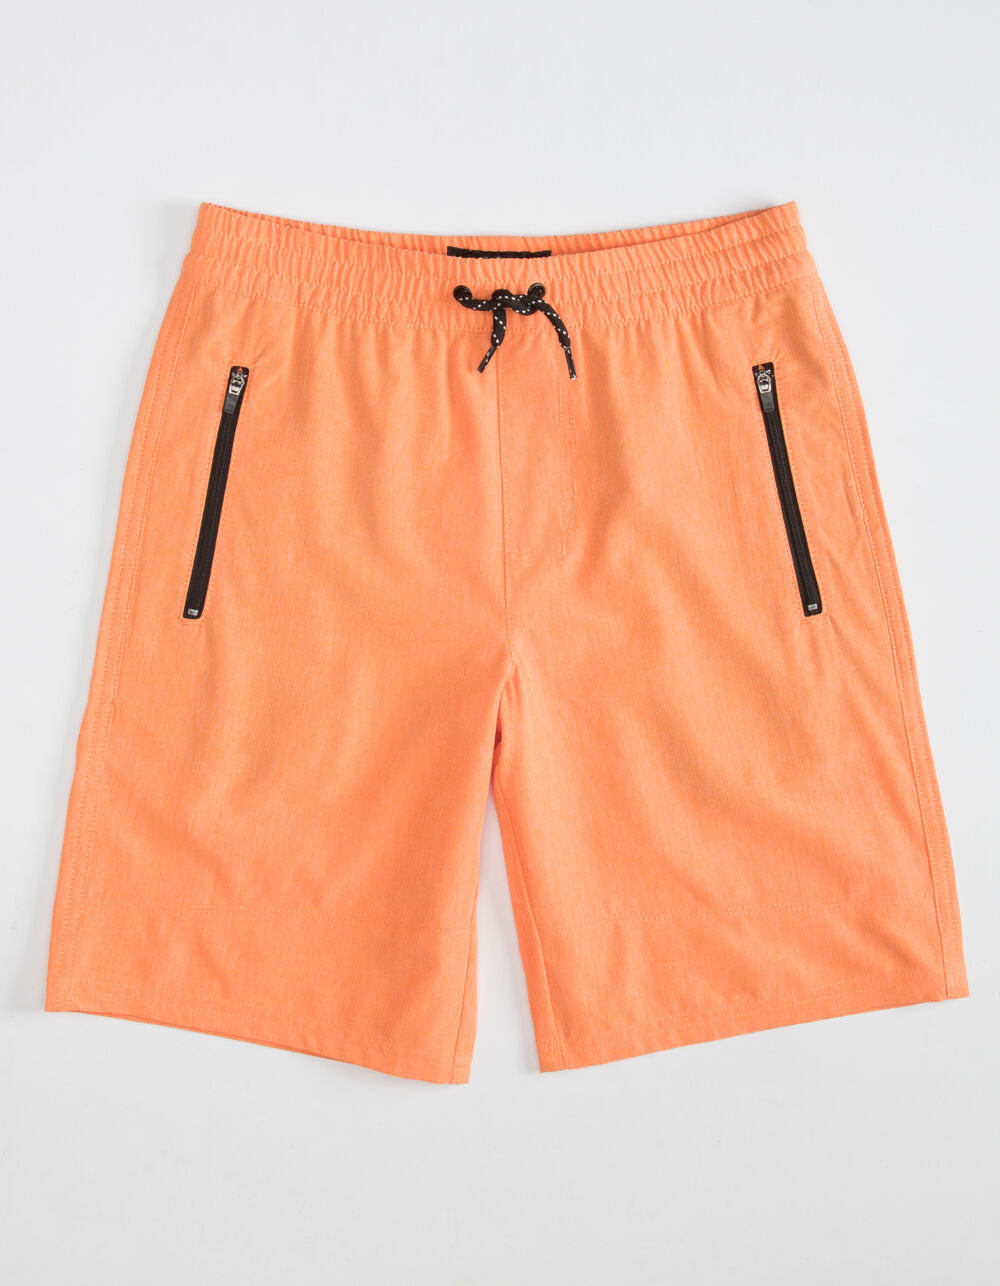 NITROUS BLACK Pull On Boys Neon Orange Hybrid Shorts image number 0